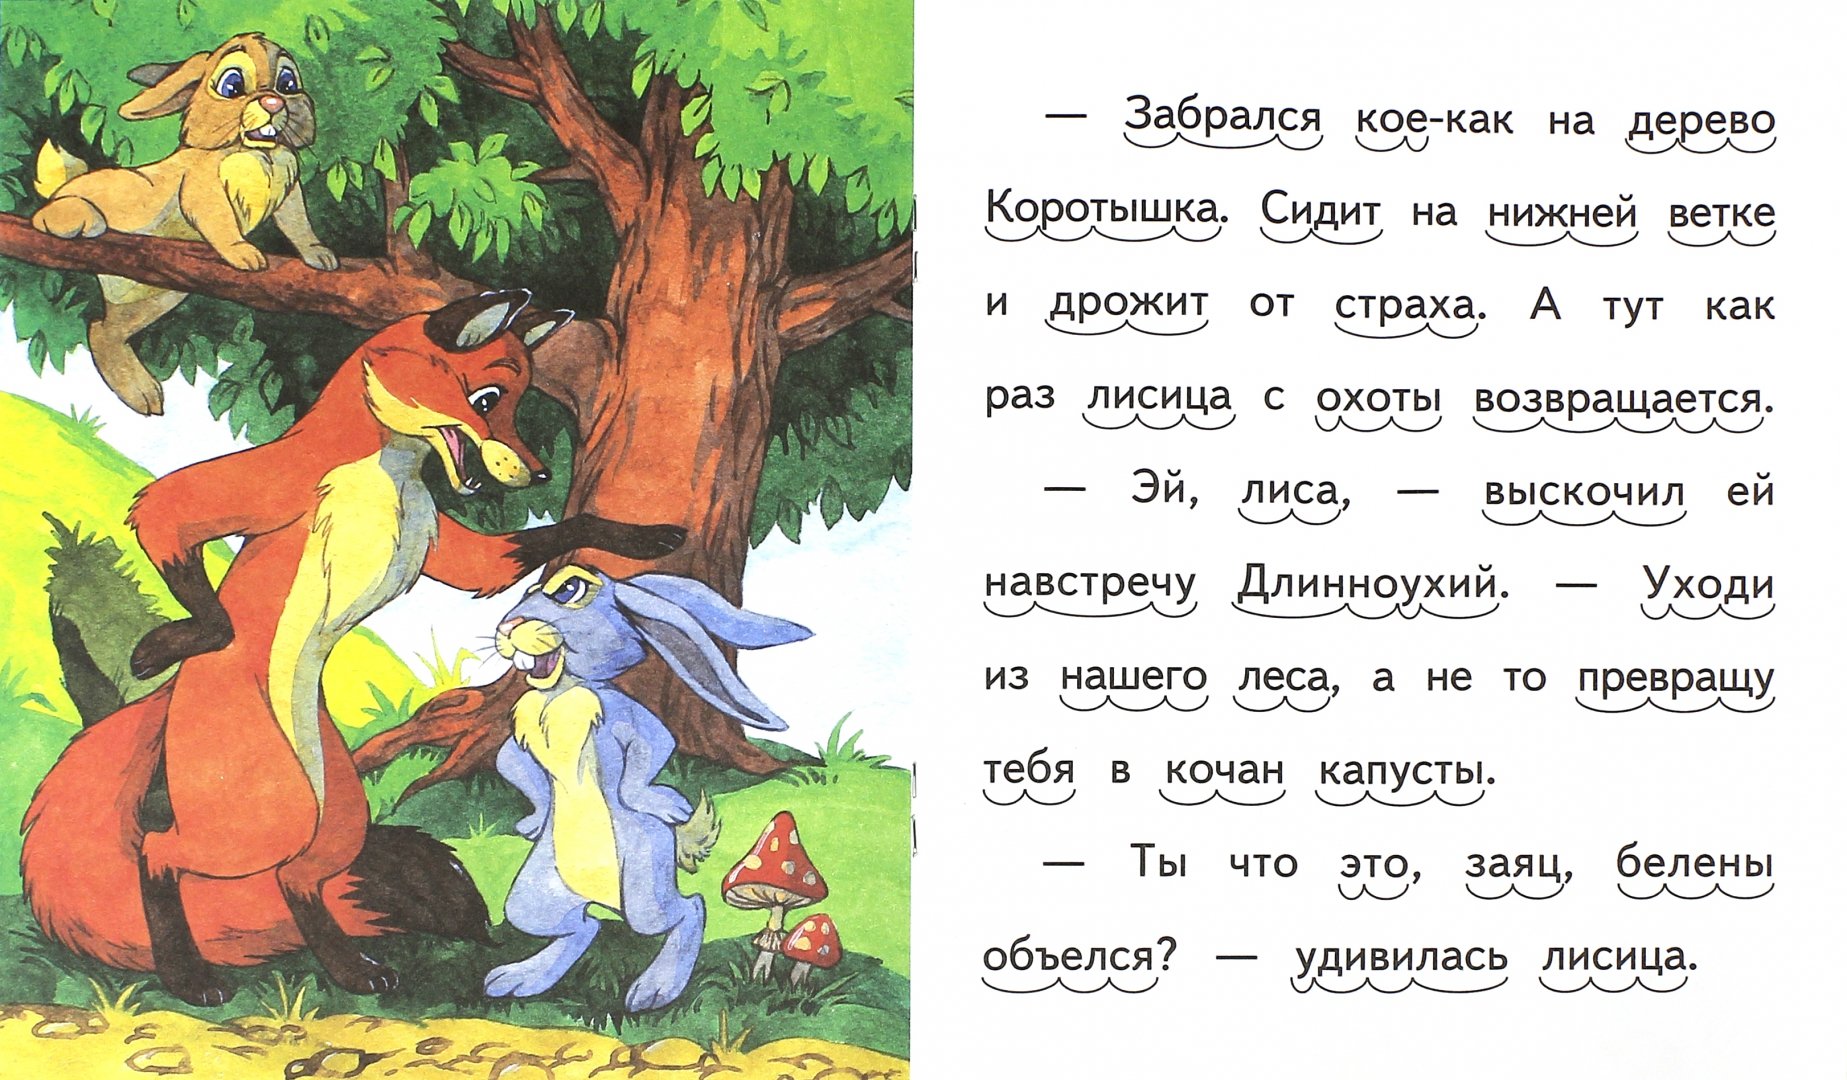 Иллюстрация 1 из 7 для Как зайцы решили лису проучить - Елена Ермолова | Лабиринт - книги. Источник: Лабиринт